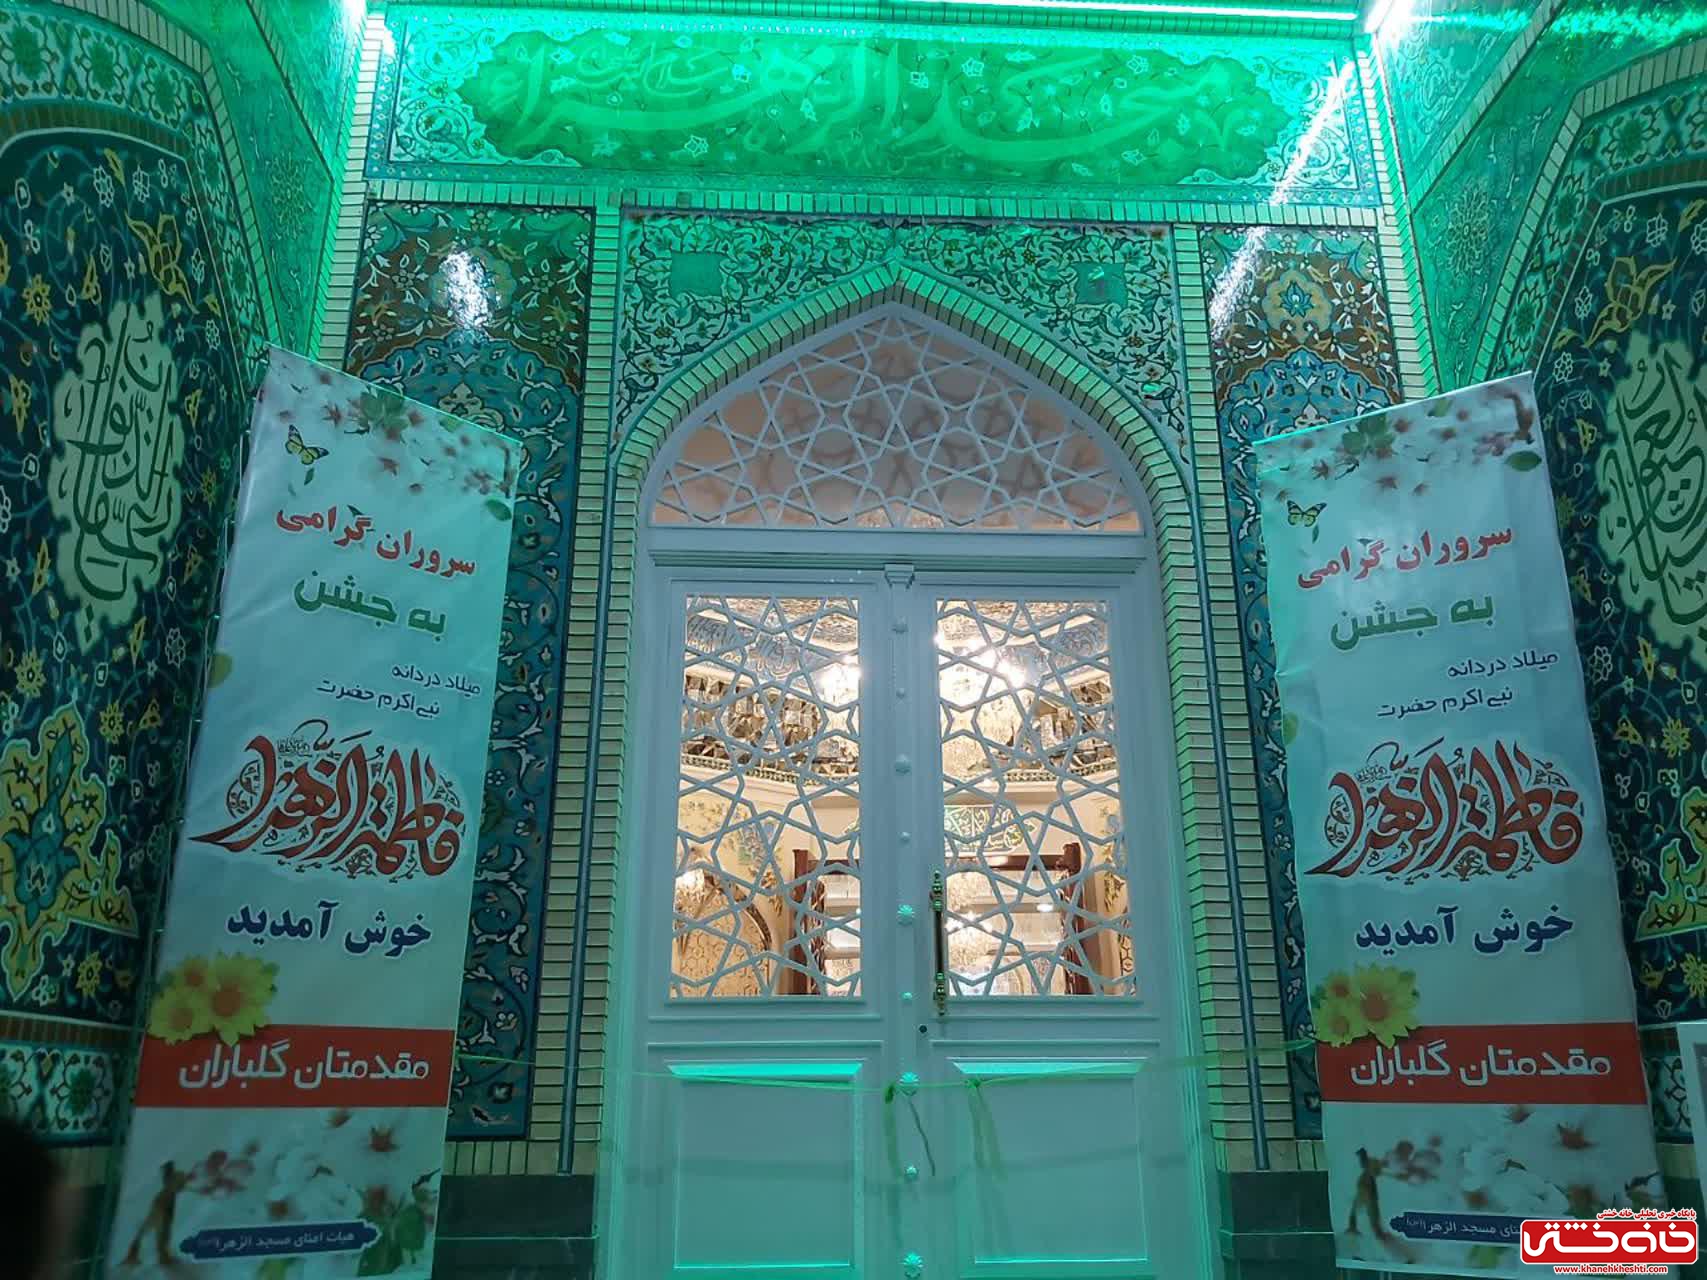 شبستان اصلی مسجد الزهرا (س) رفسنجان در شب میلاد حضرت فاطمه(س) 